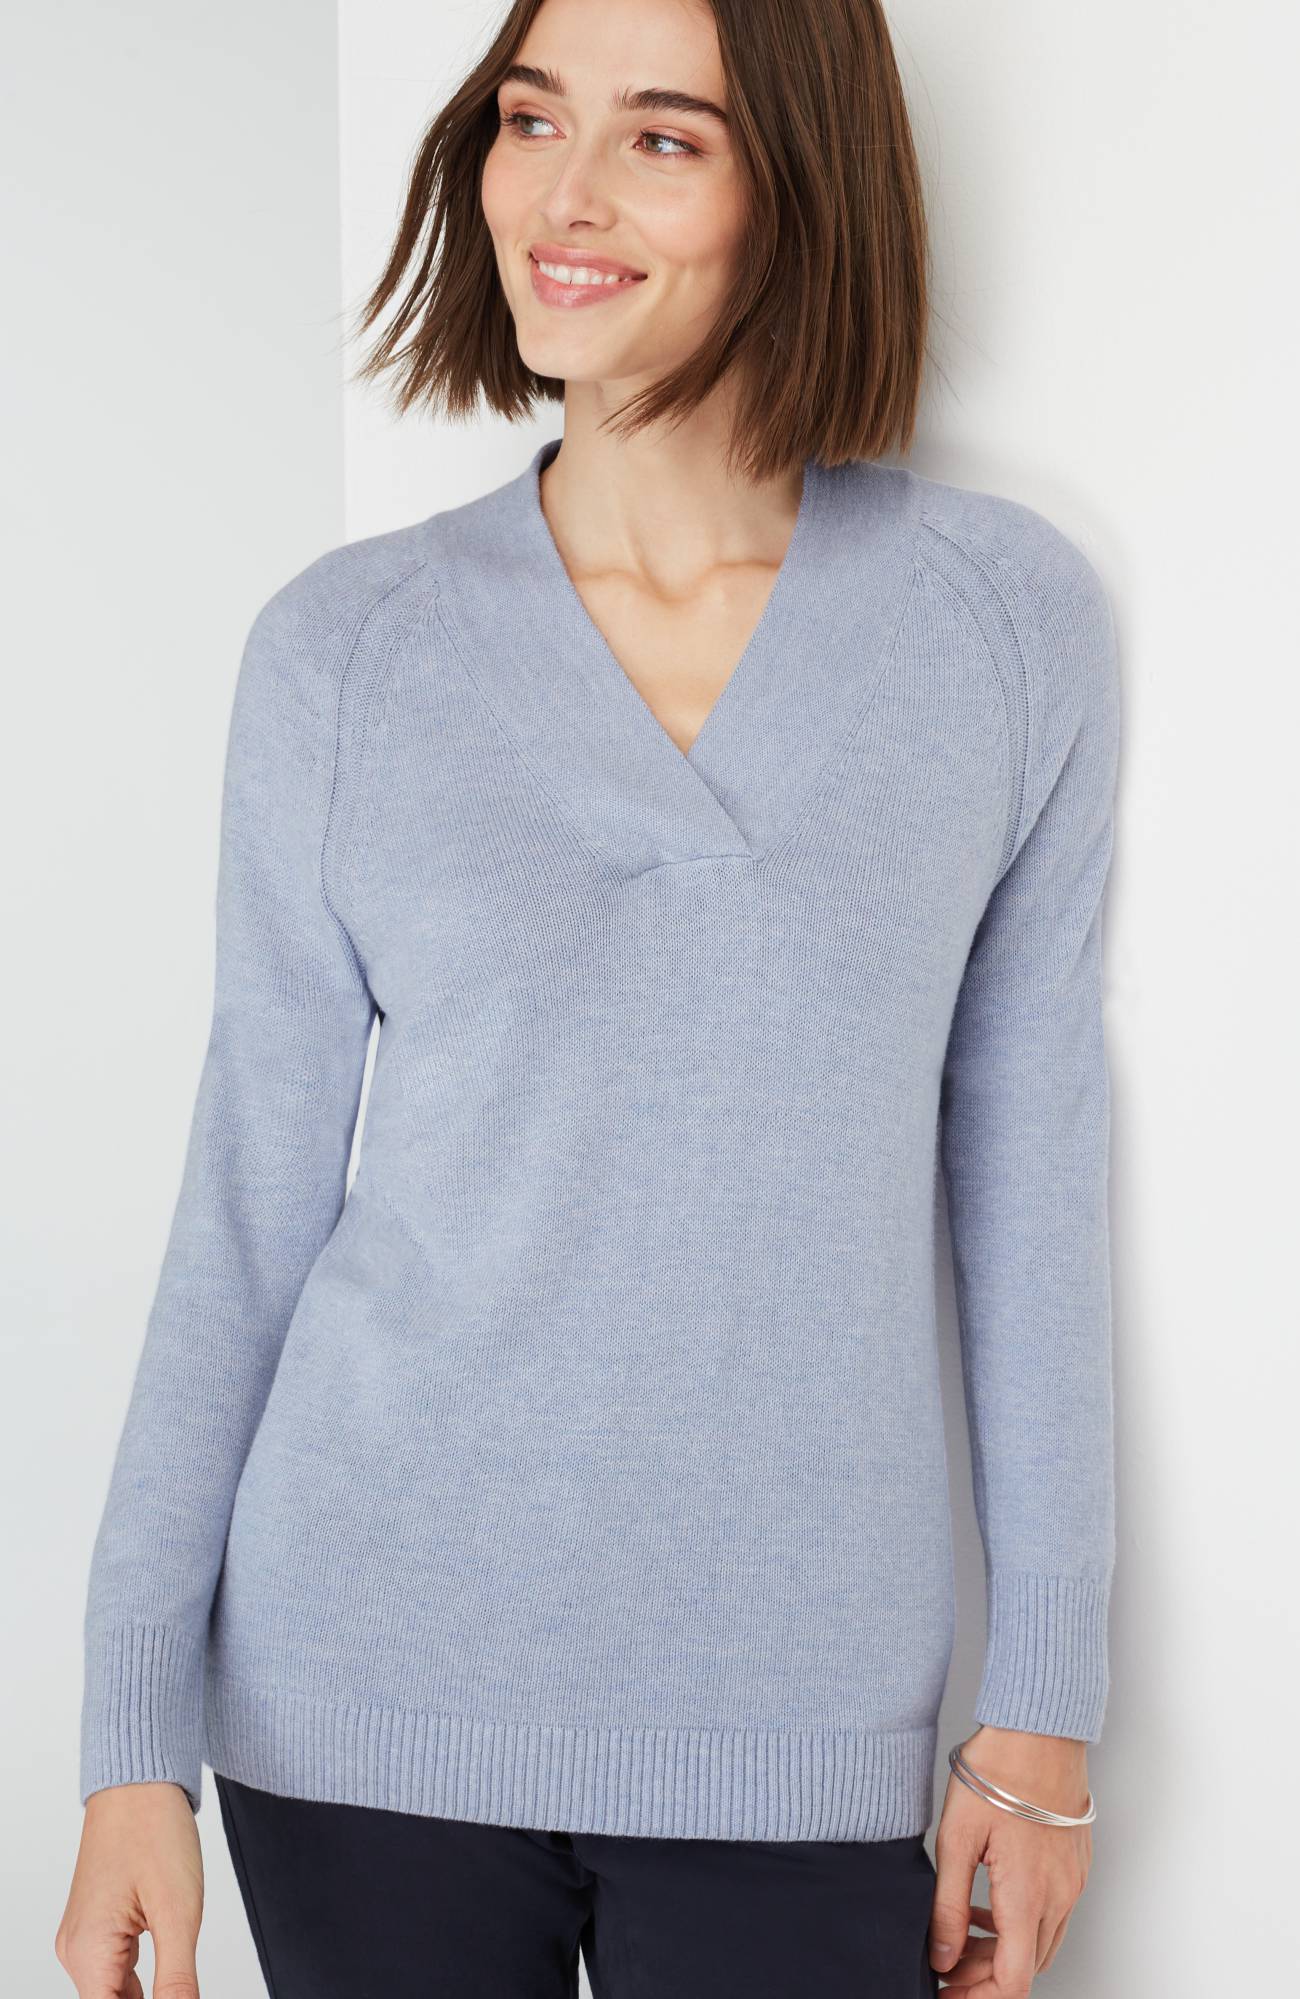 Orvis Ladies' Chenille Pullover V-Neck Sweater K41